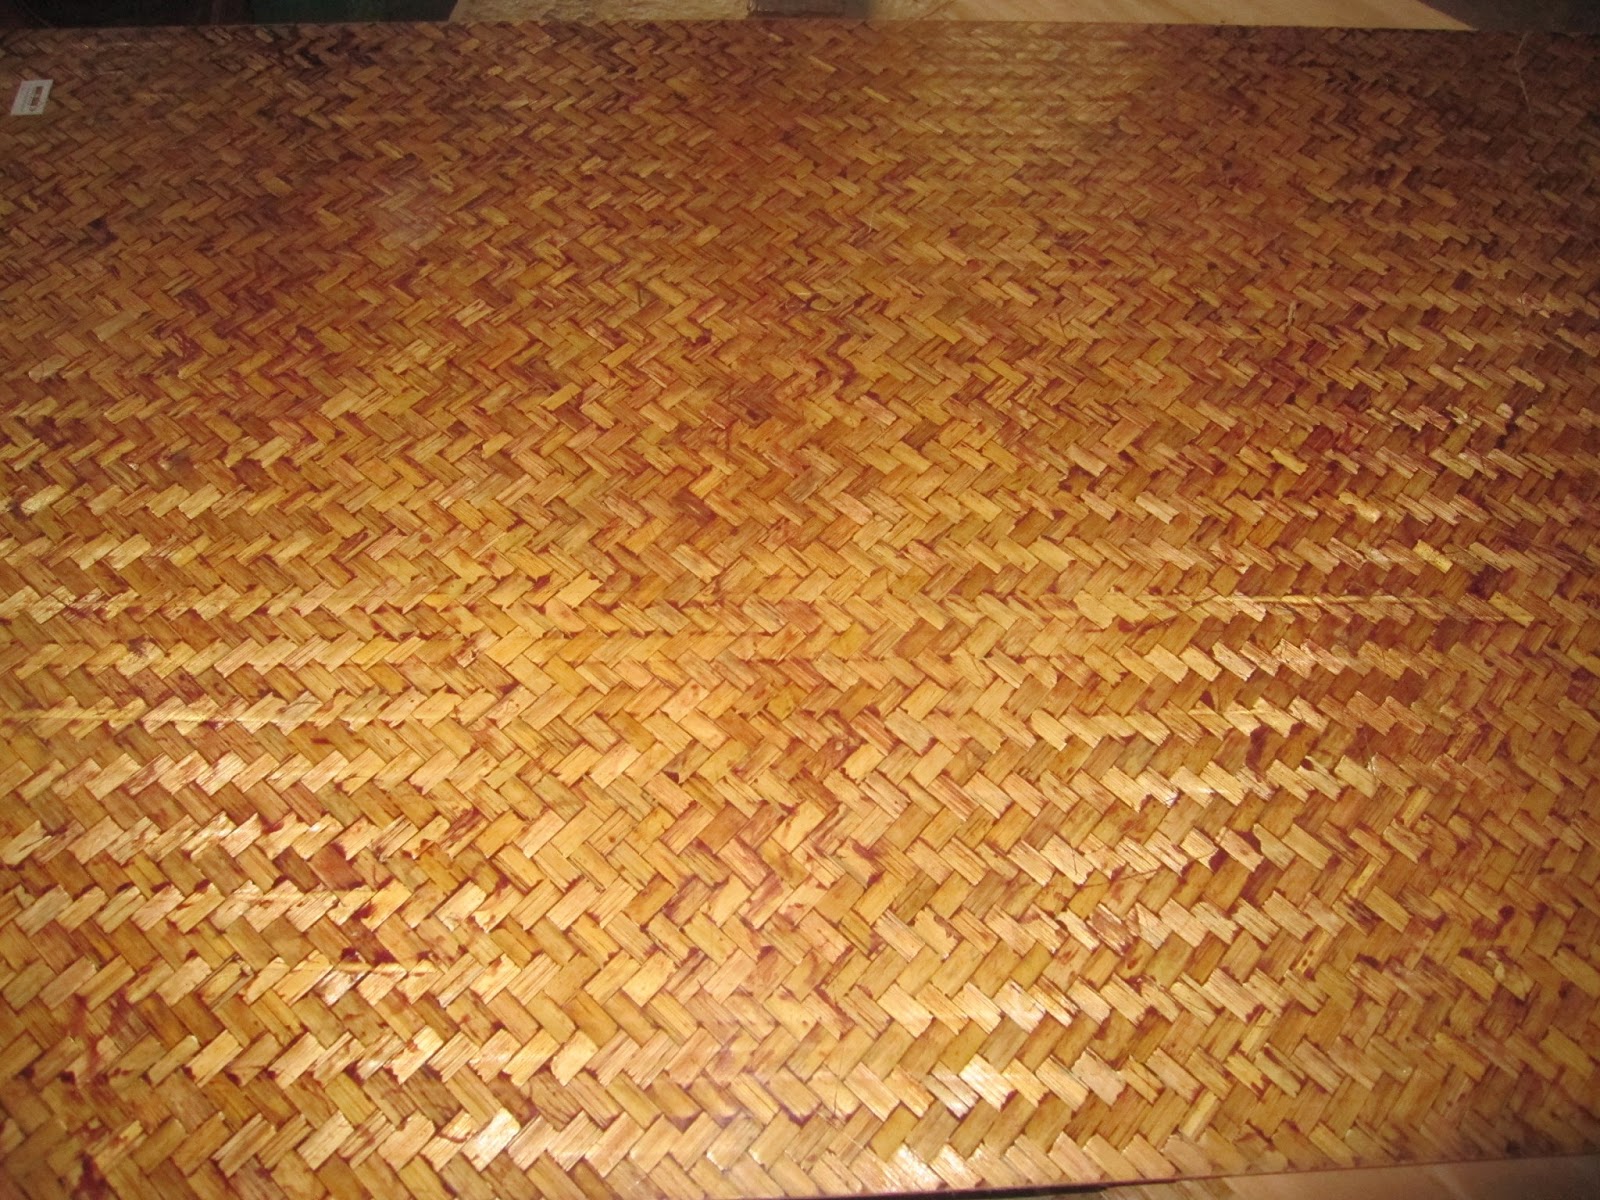 Woven Bamboo Wallpaper Natural Tropical Decorative At